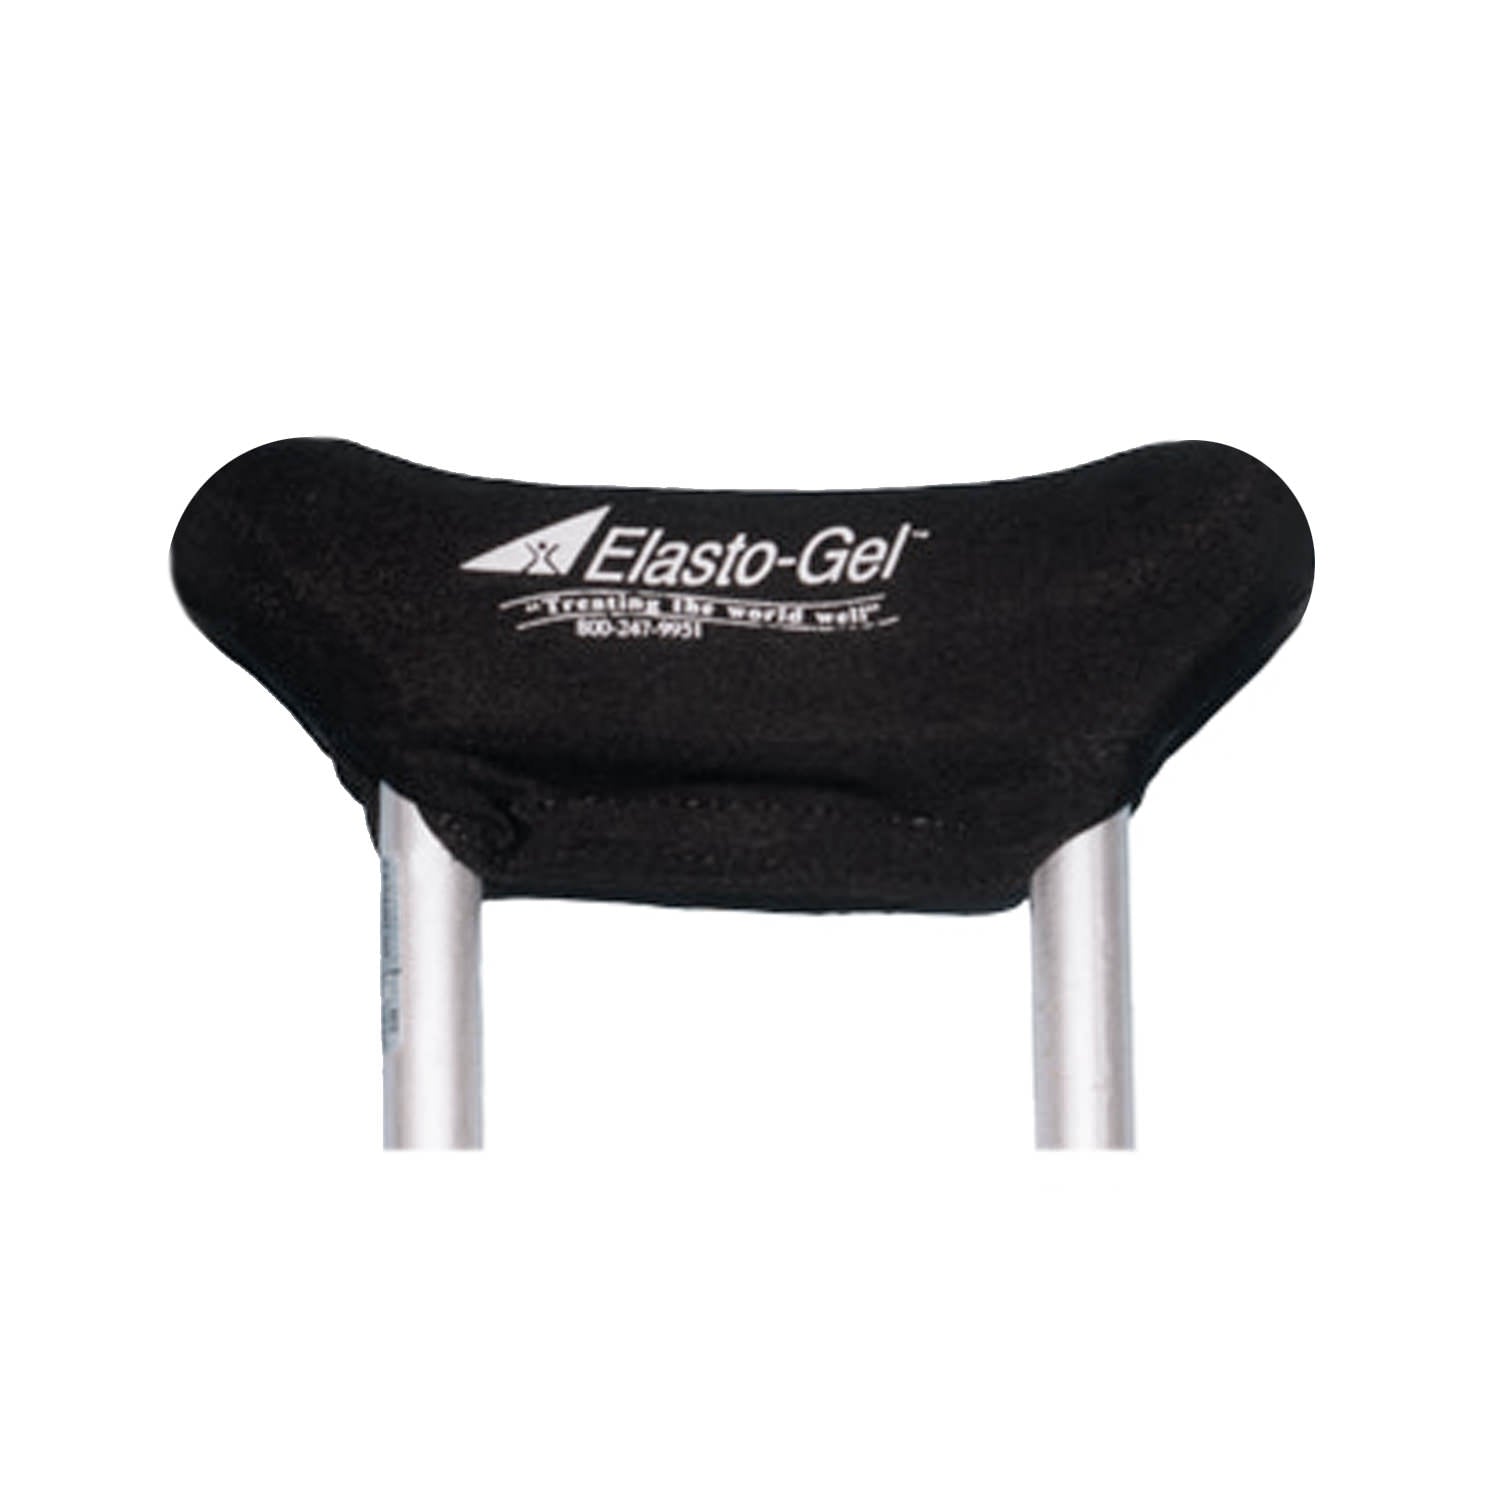 Elasto-Gel Underarm Crutch Pad, 1 Pair